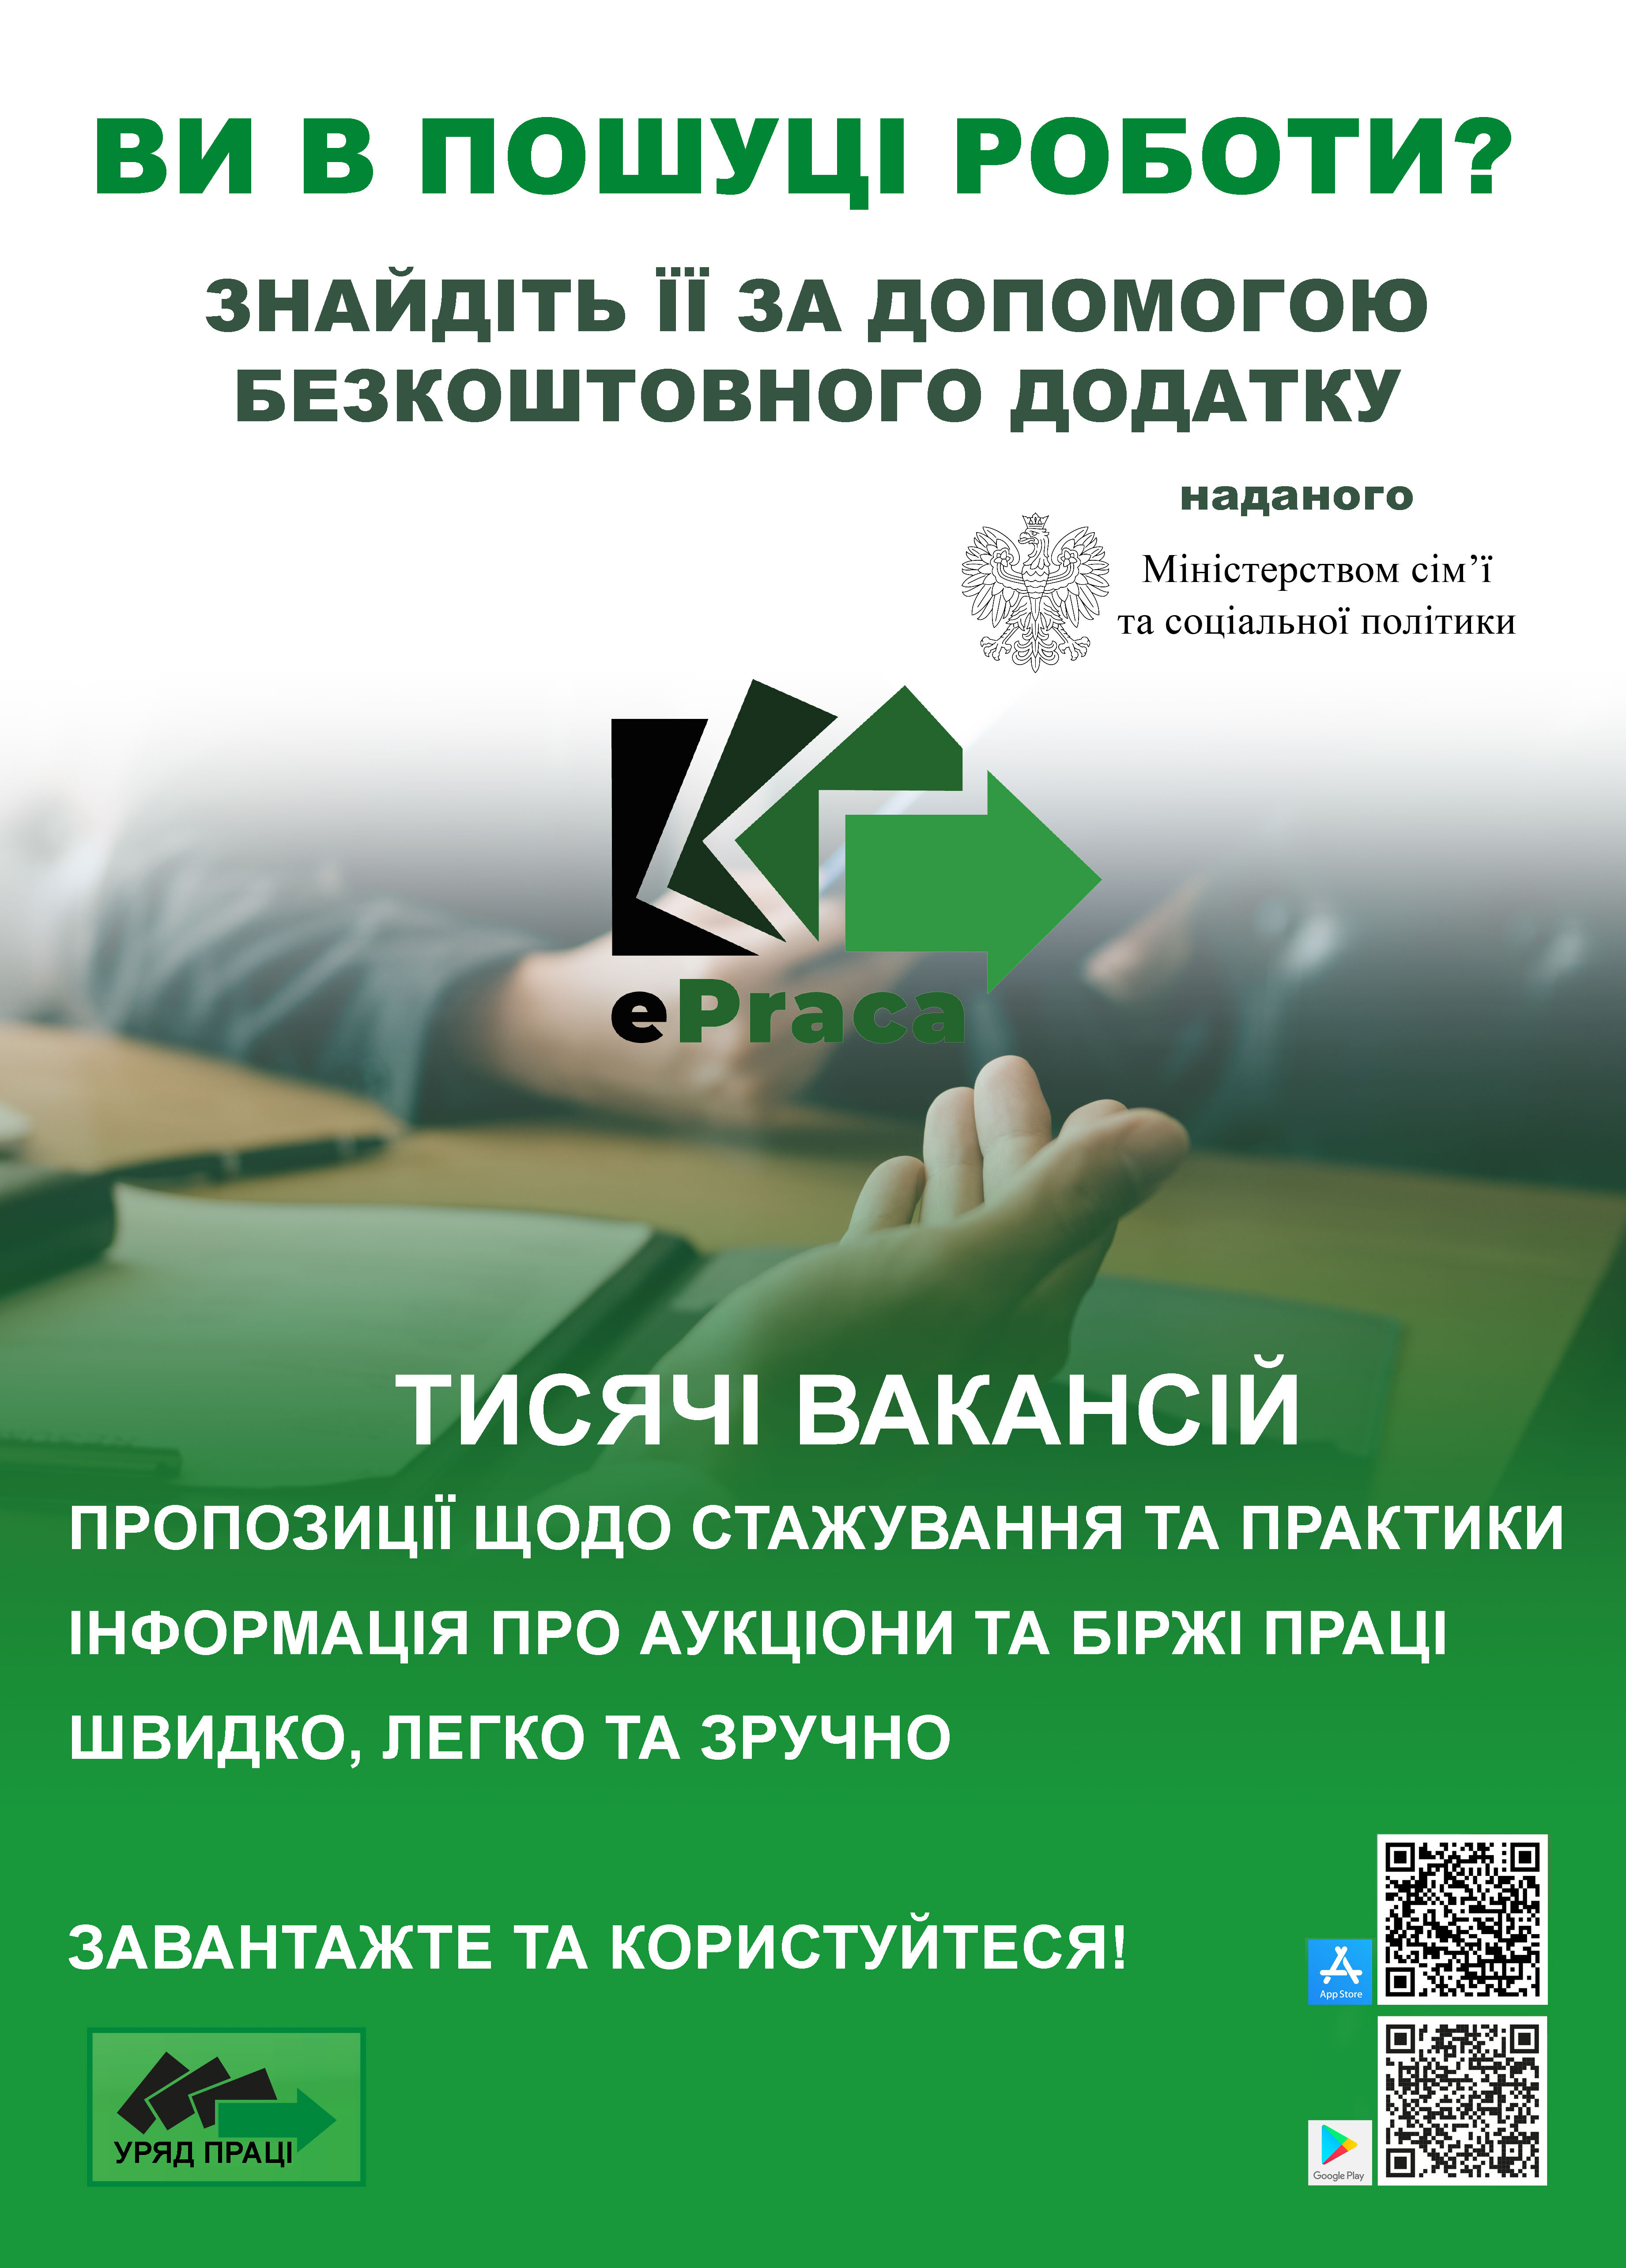 Plakat informujący uchodźców wojennych z Ukrainy o możliwości skorzystania z aplikacji mobilnej służącej do szukania pracy w Polsce